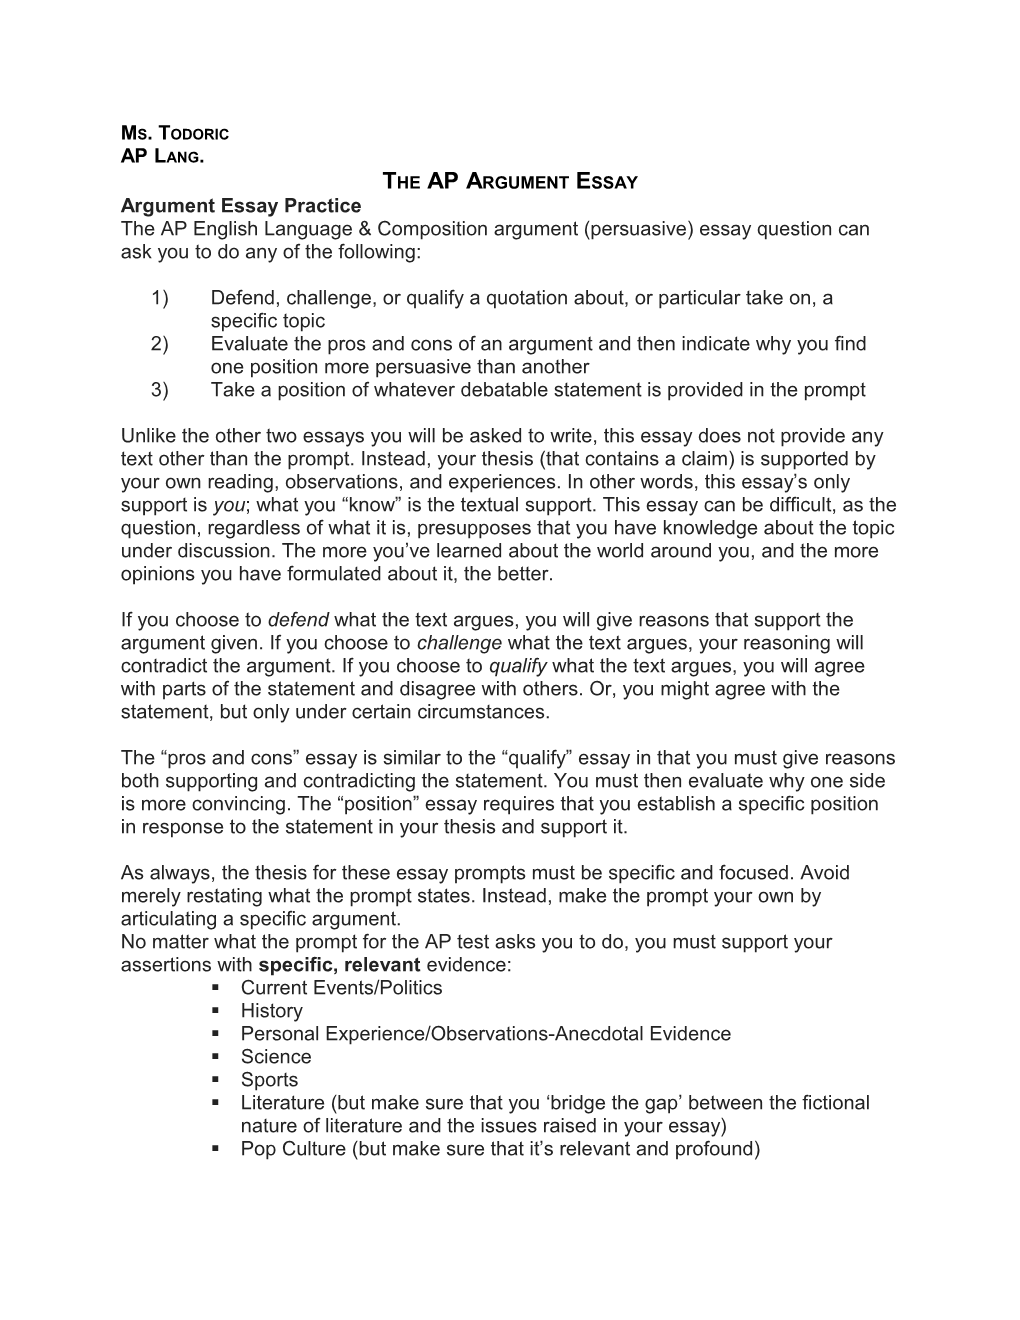 The Ap Argument Essay